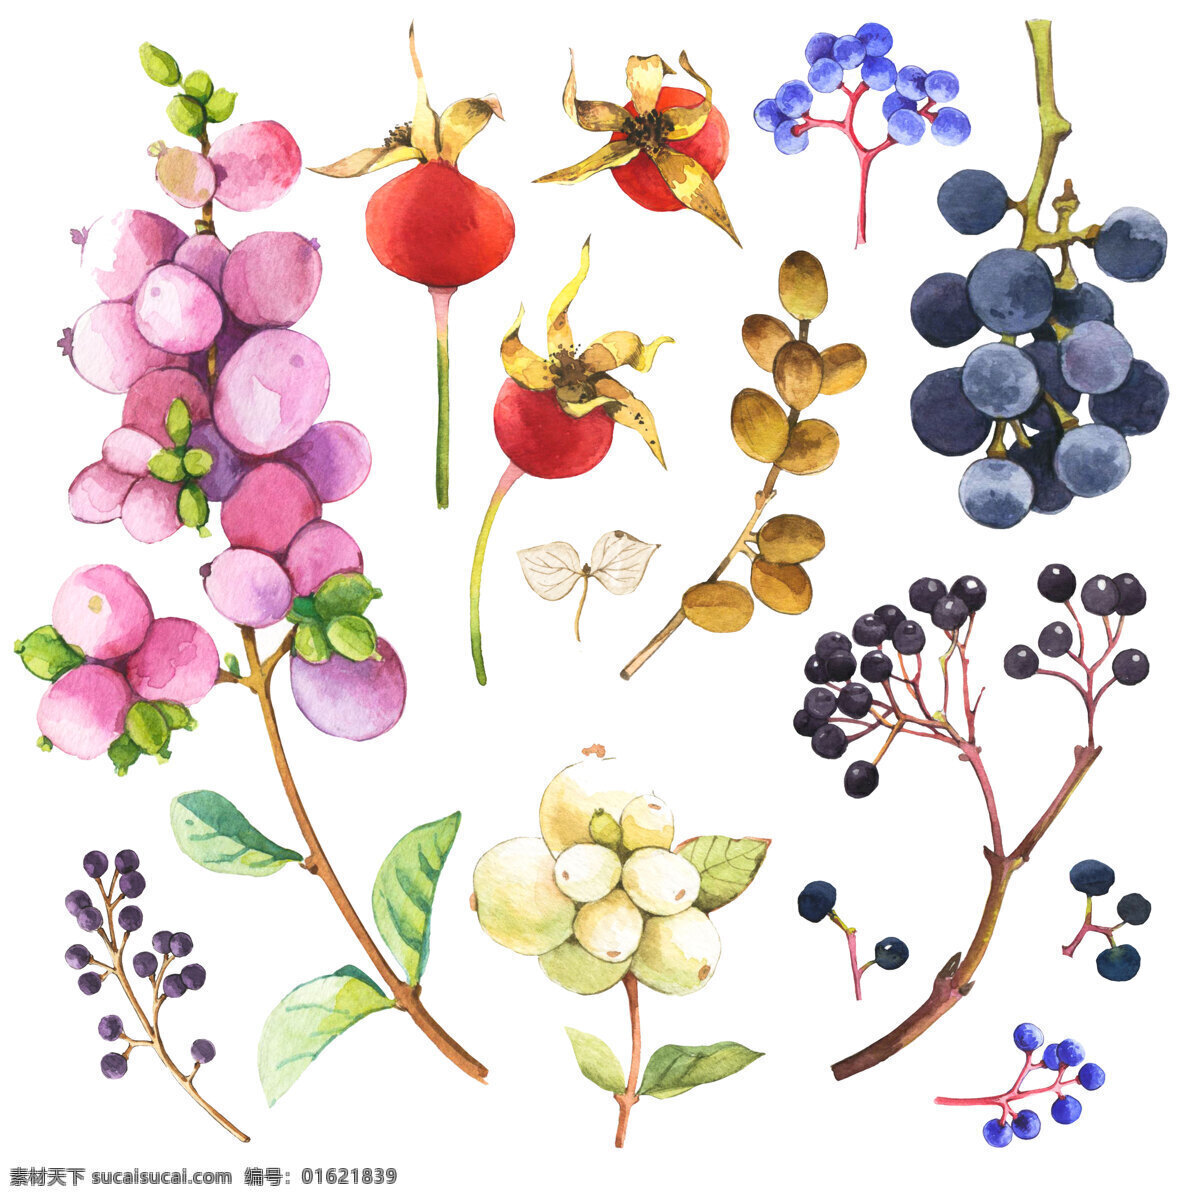 时尚 水彩 绘 各种 野果 果实 水彩绘 手绘 植物 唯美 文化艺术 绘画书法